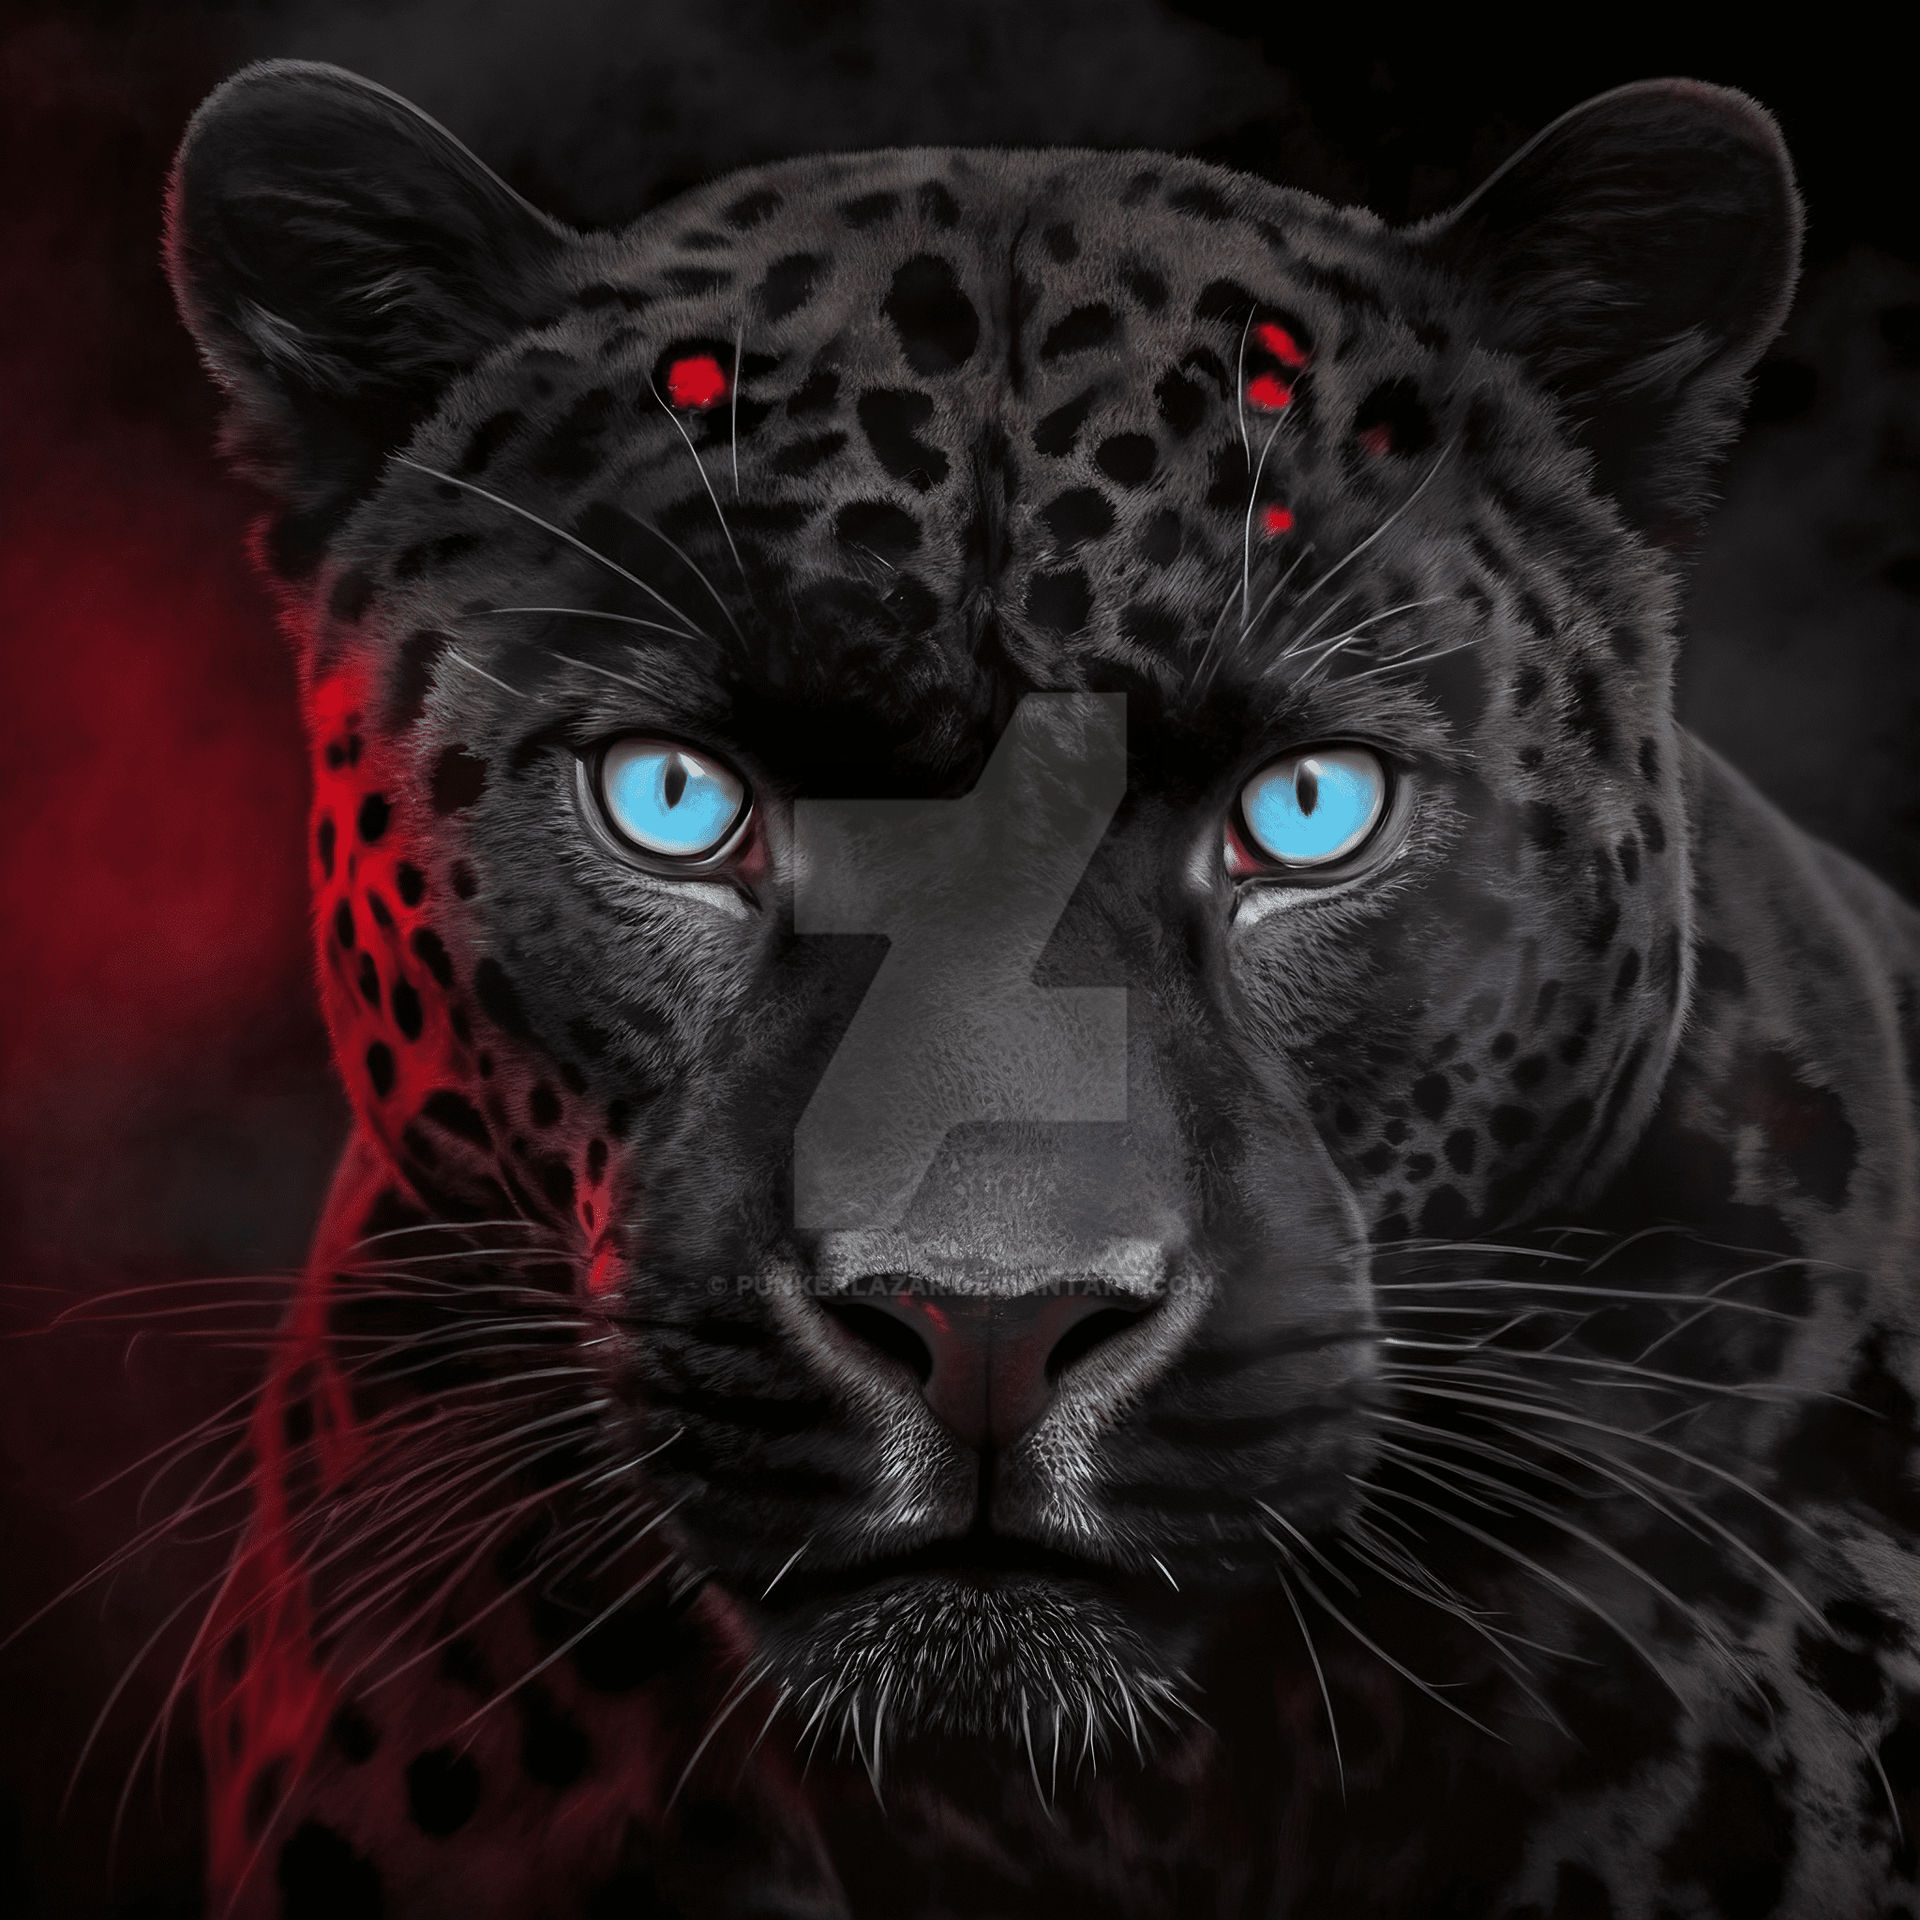 Black Panther Blue eyes (1) by PunkerLazar on DeviantArt